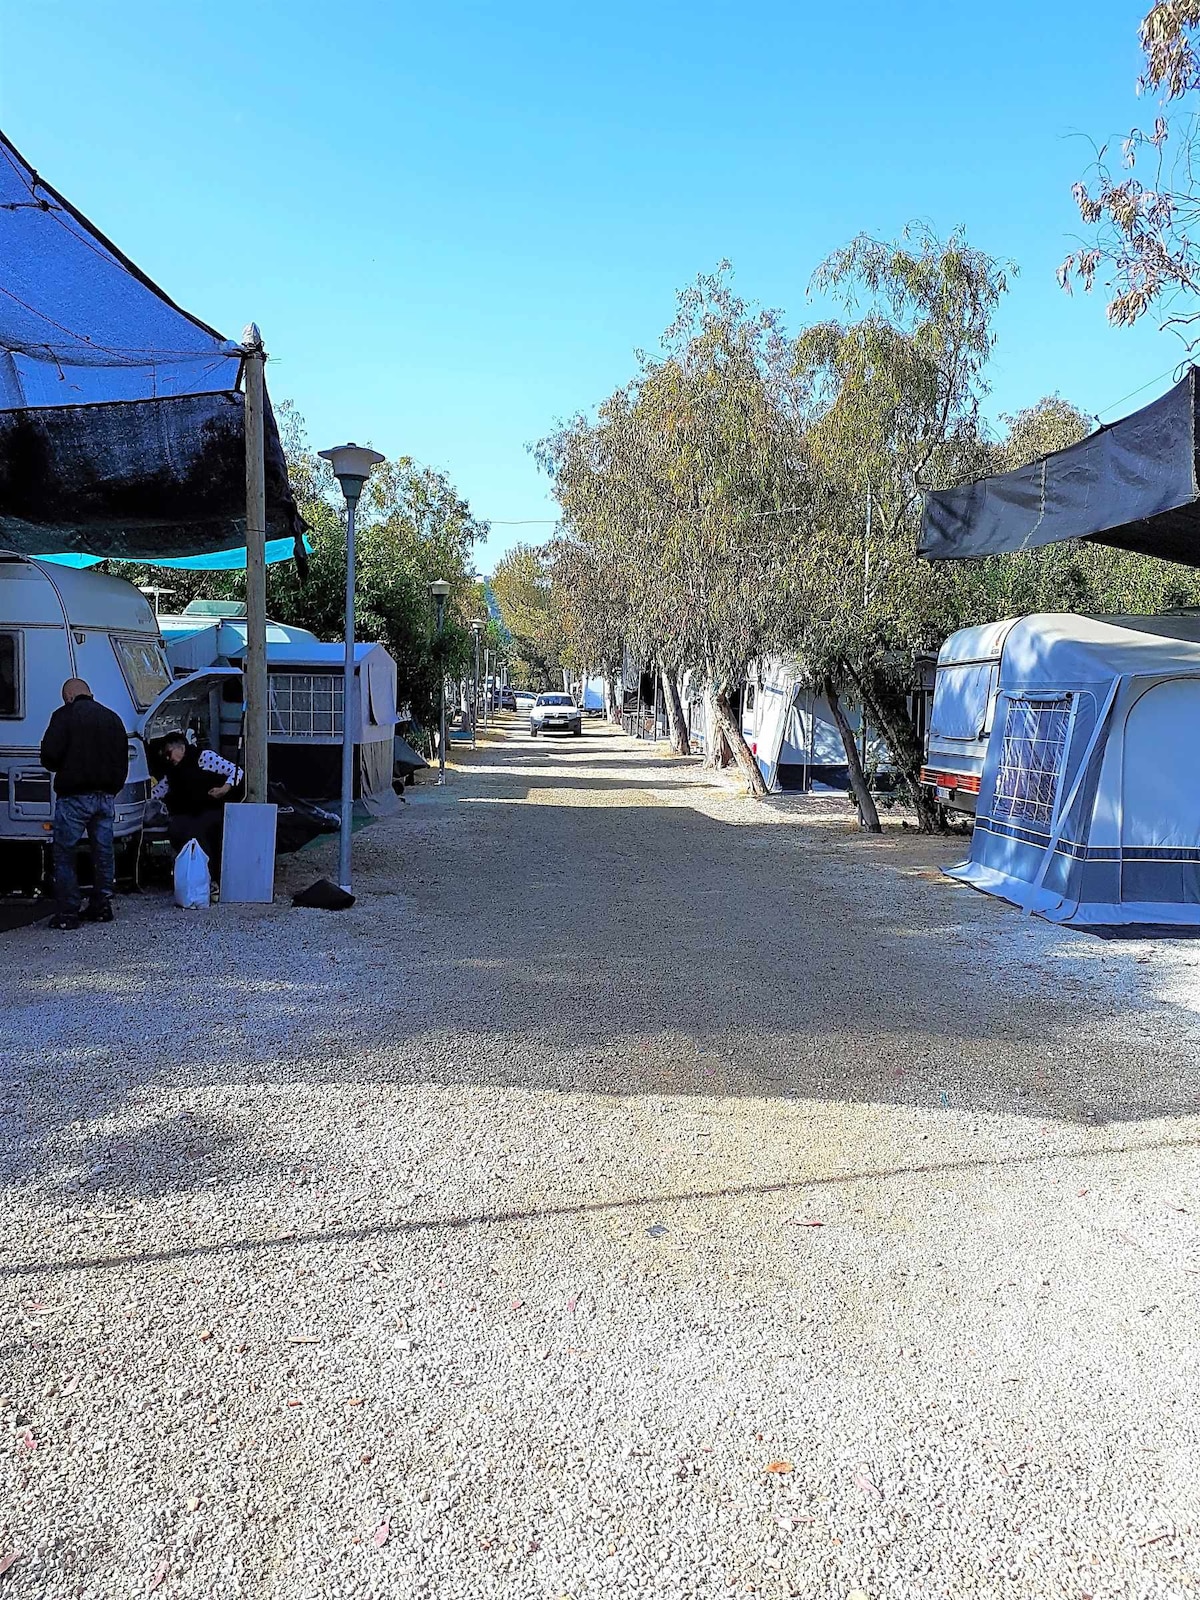 大篷车、汽车房或帐篷的空地段。